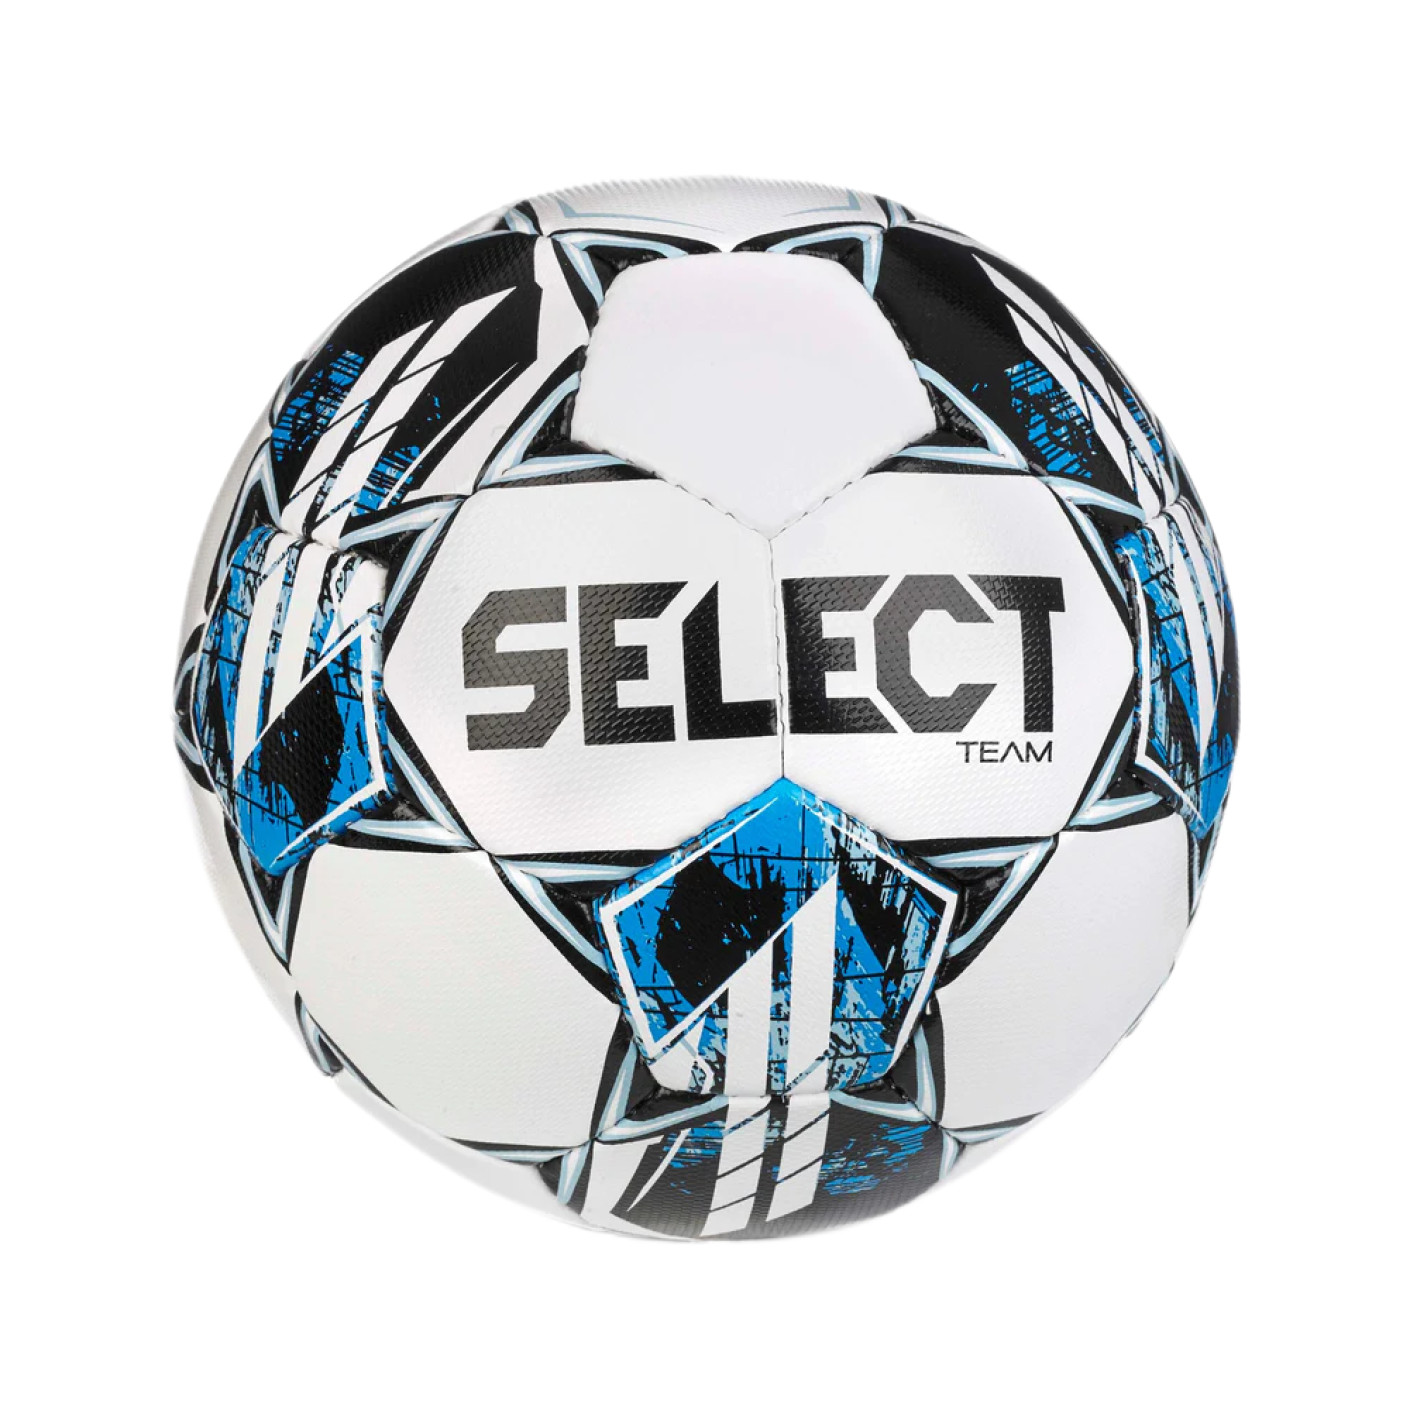 Select Team v23 Ballon de Football Taille 4 Blanc Bleu